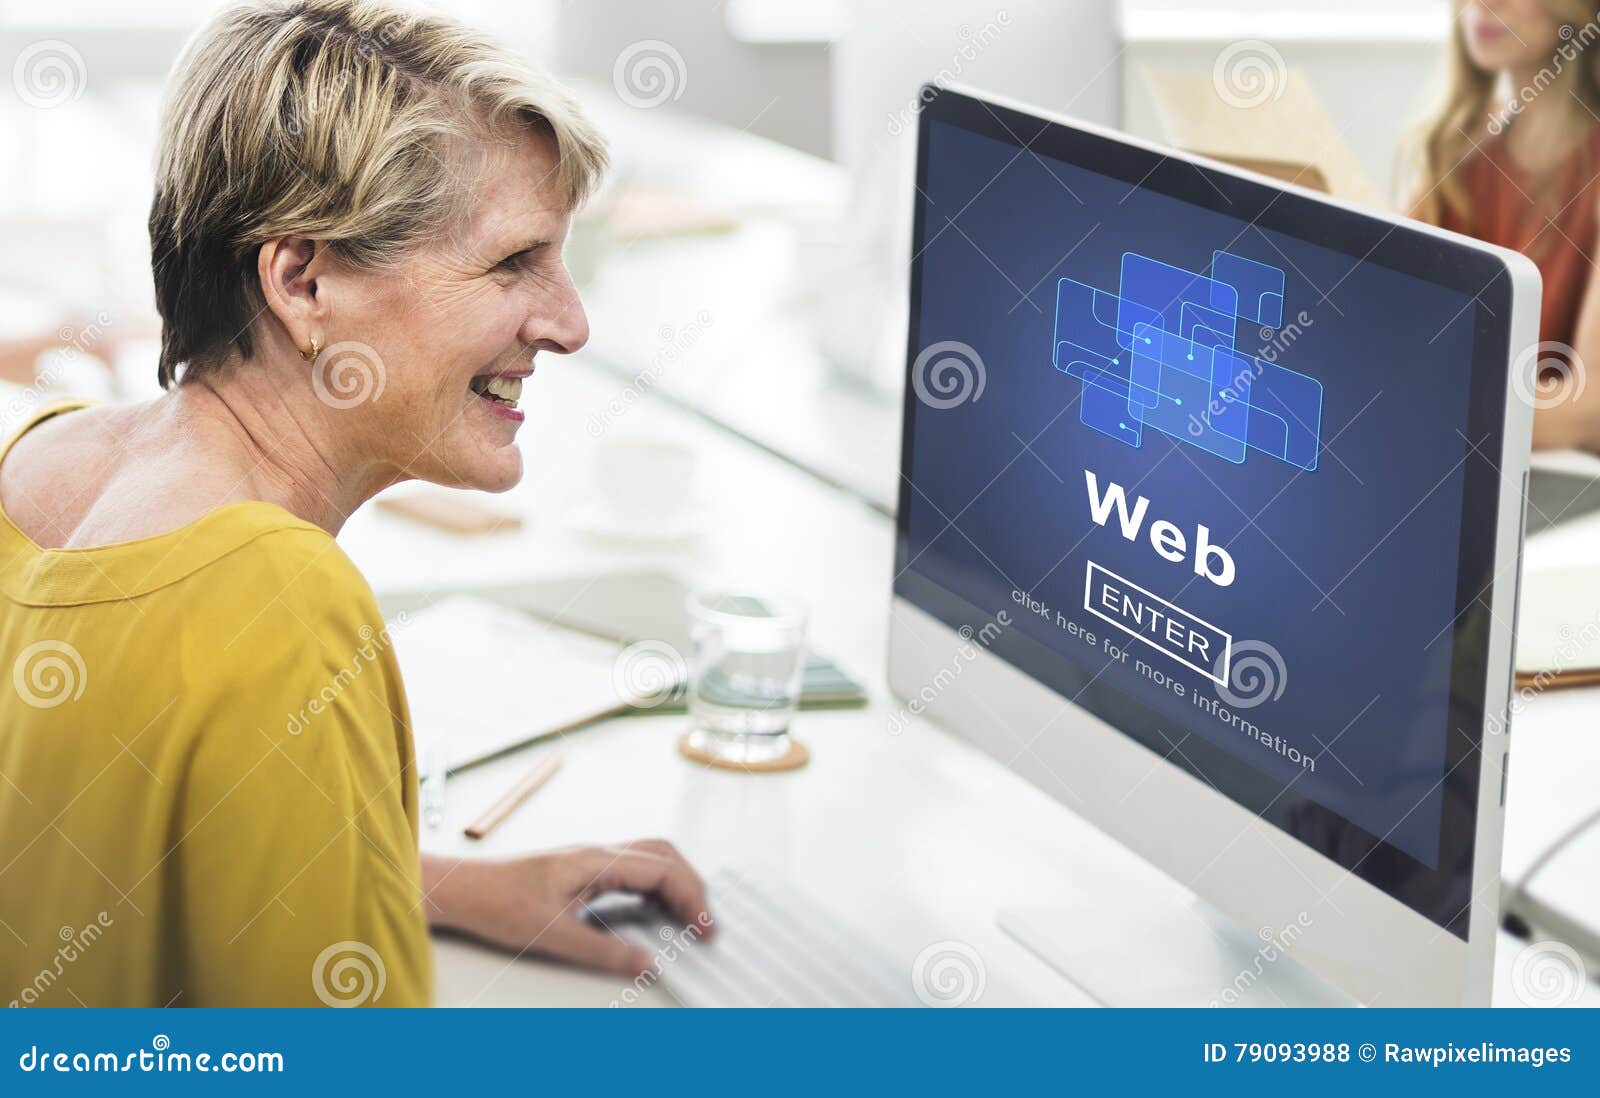 web-website-www-browser-internet-network